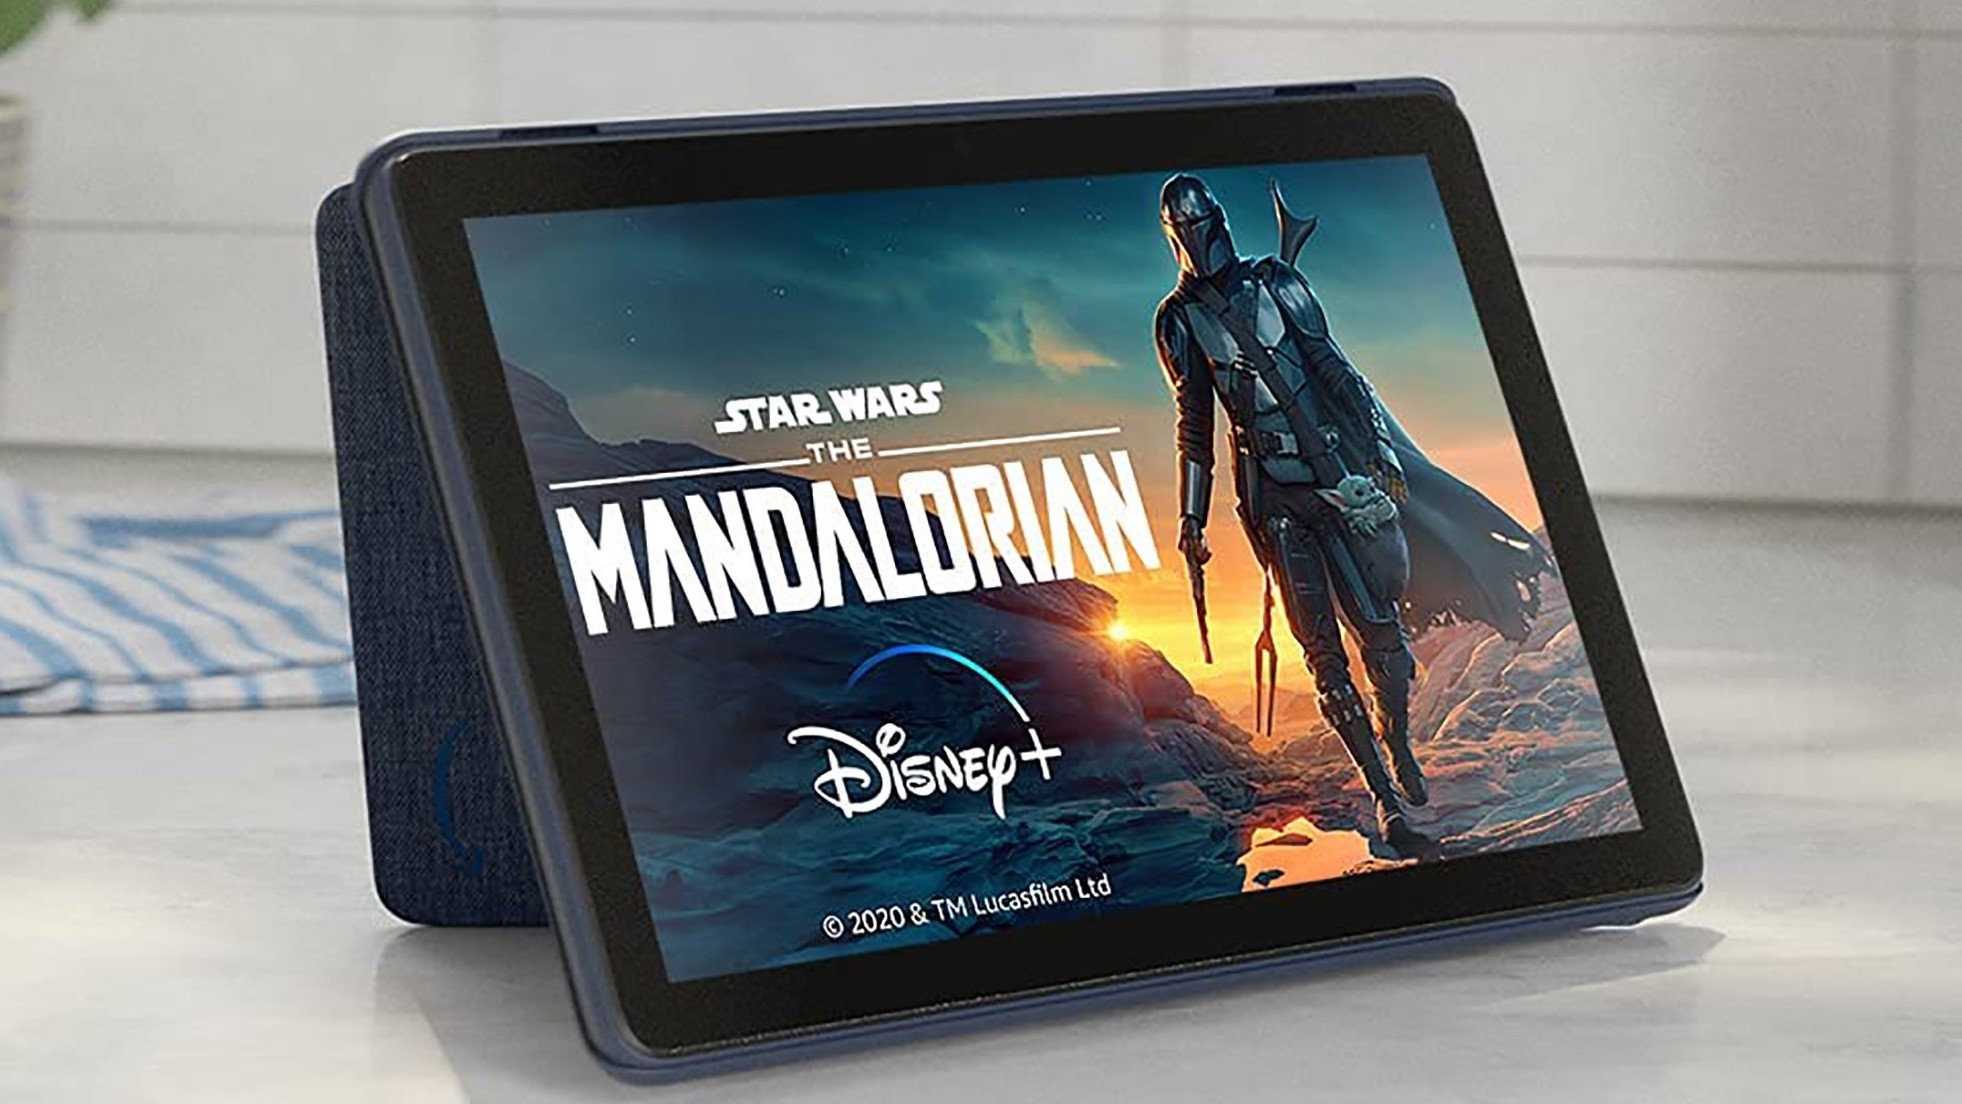 Una tableta Amazon Fire HD 10 se encuentra en el mostrador de la cocina.  The Mandalorian se muestra en la pantalla.